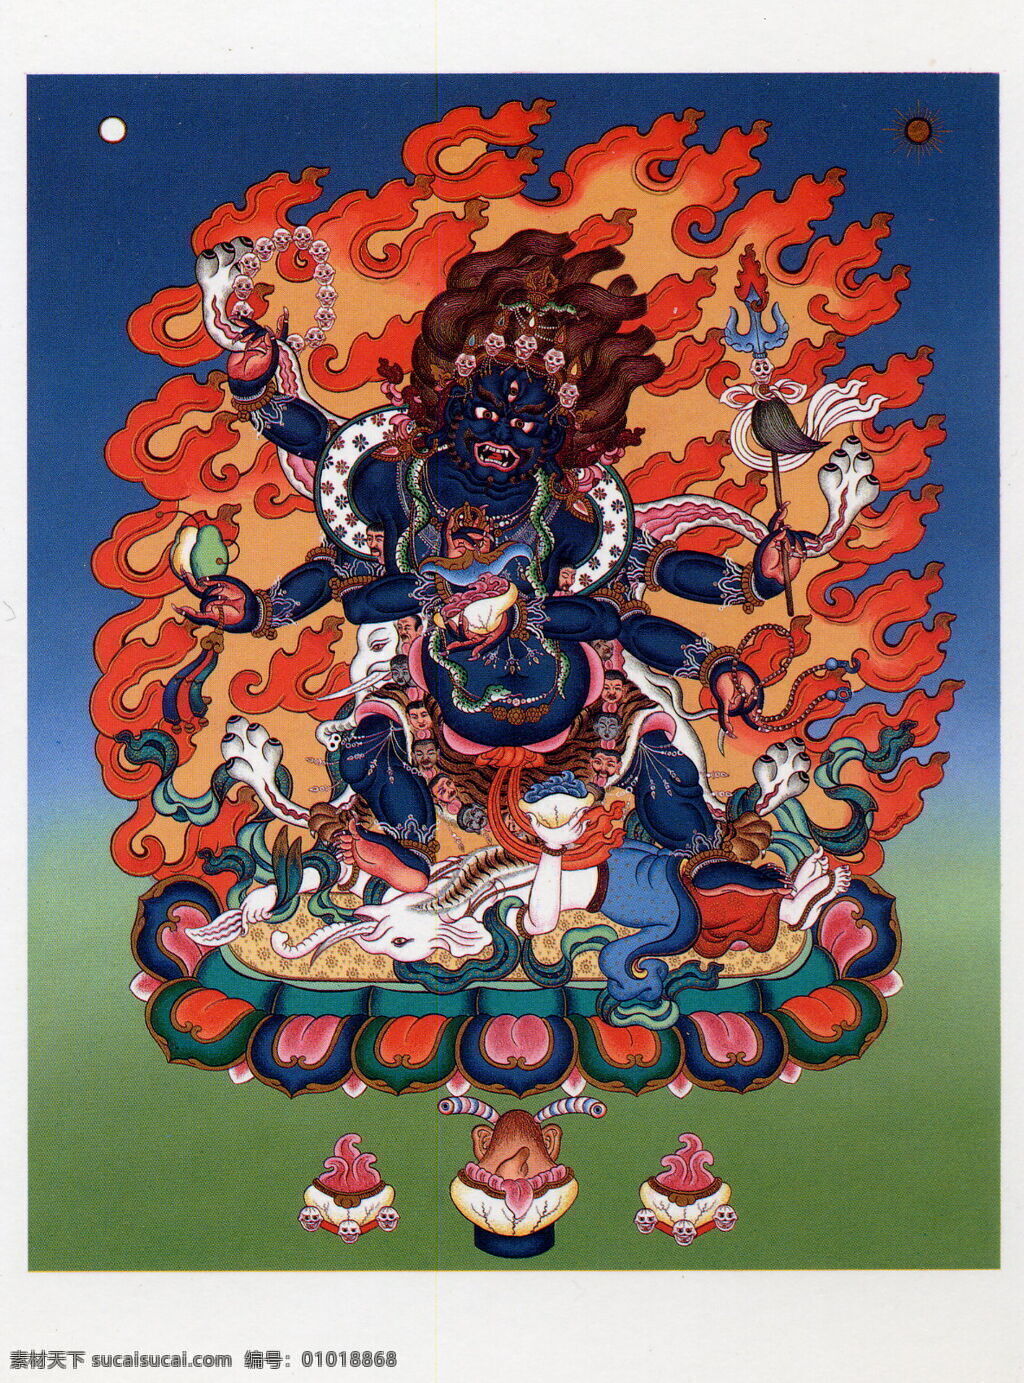 六臂玛哈嘎拉 设计素材 六 臂 玛 嘎拉 模板下载 佛教 藏传 唐卡 宗教 艺术 宗教信仰 文化艺术